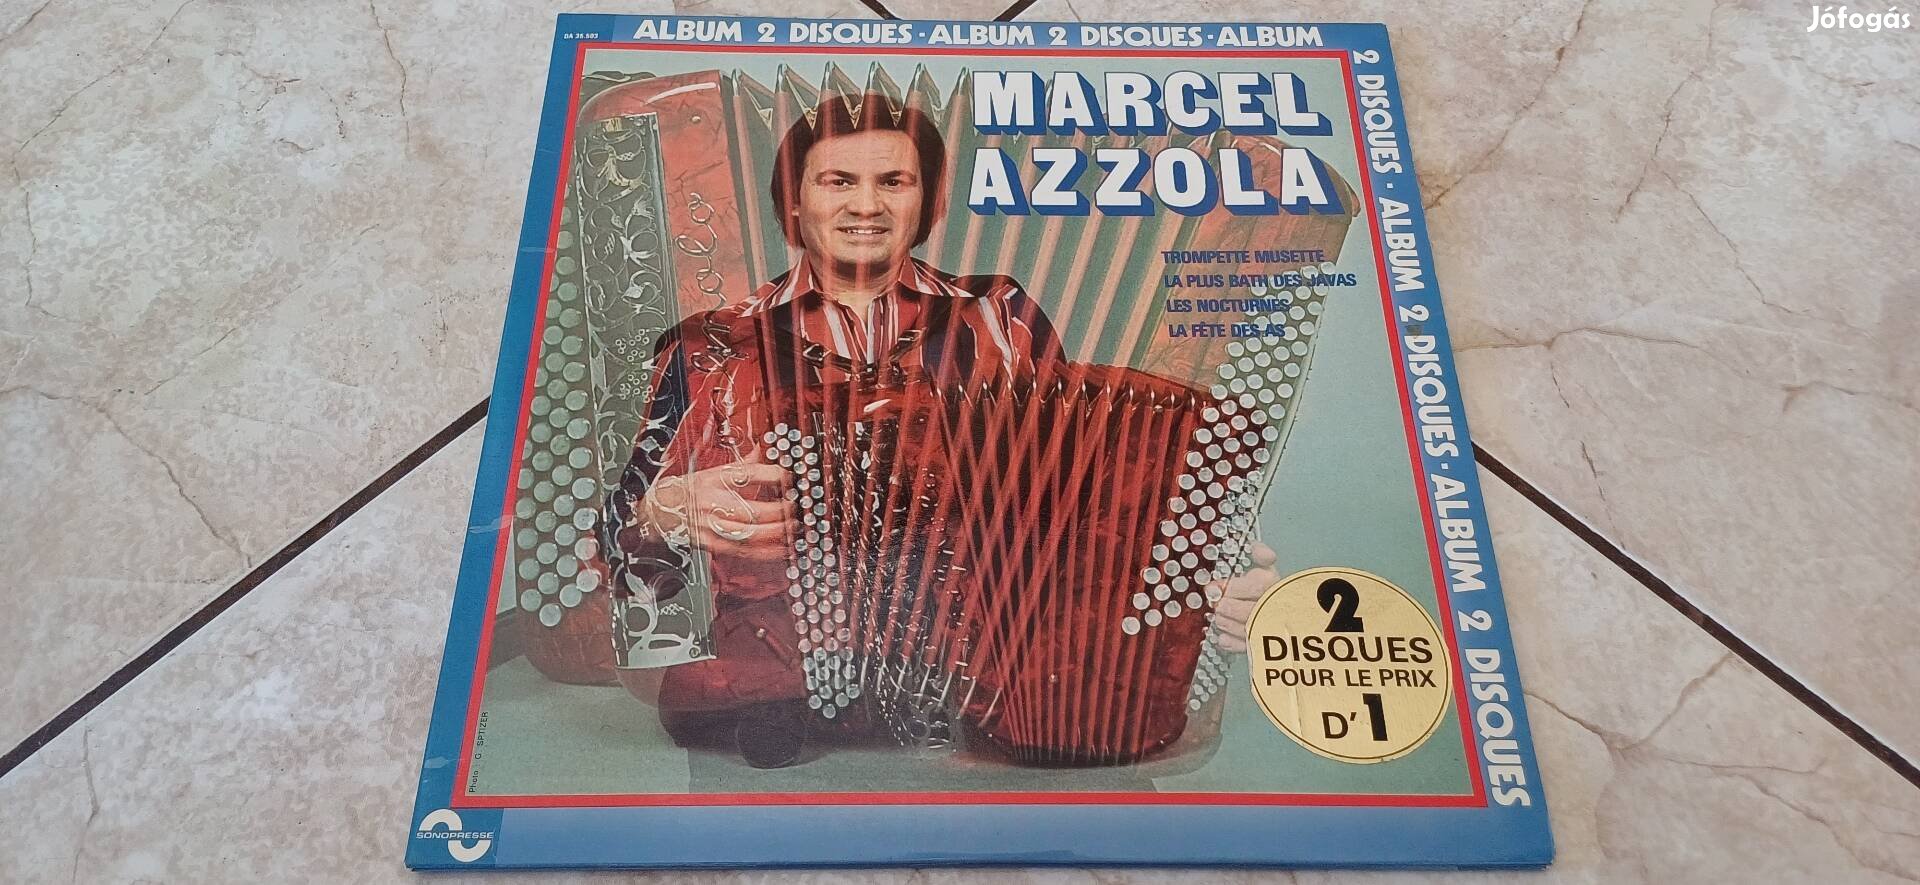 Marcel Azzola harmónika dupla bakelit lemez